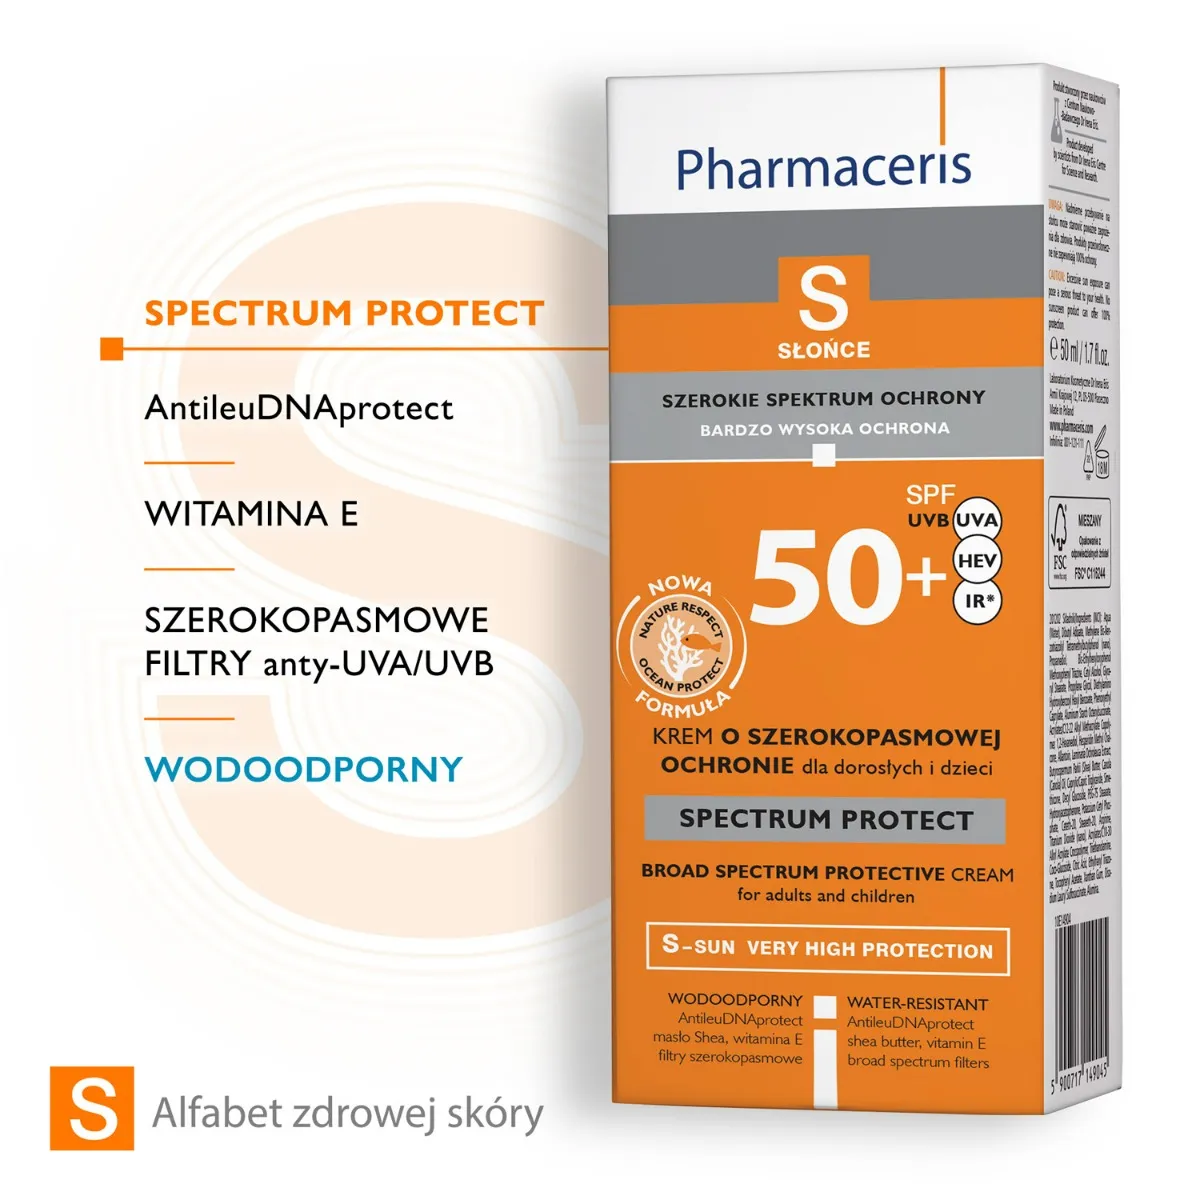 Pharmaceris S Spectrum Protect, krem o szerokopasmowej ochronie przed słońcem, SPF 50+, 50 ml 